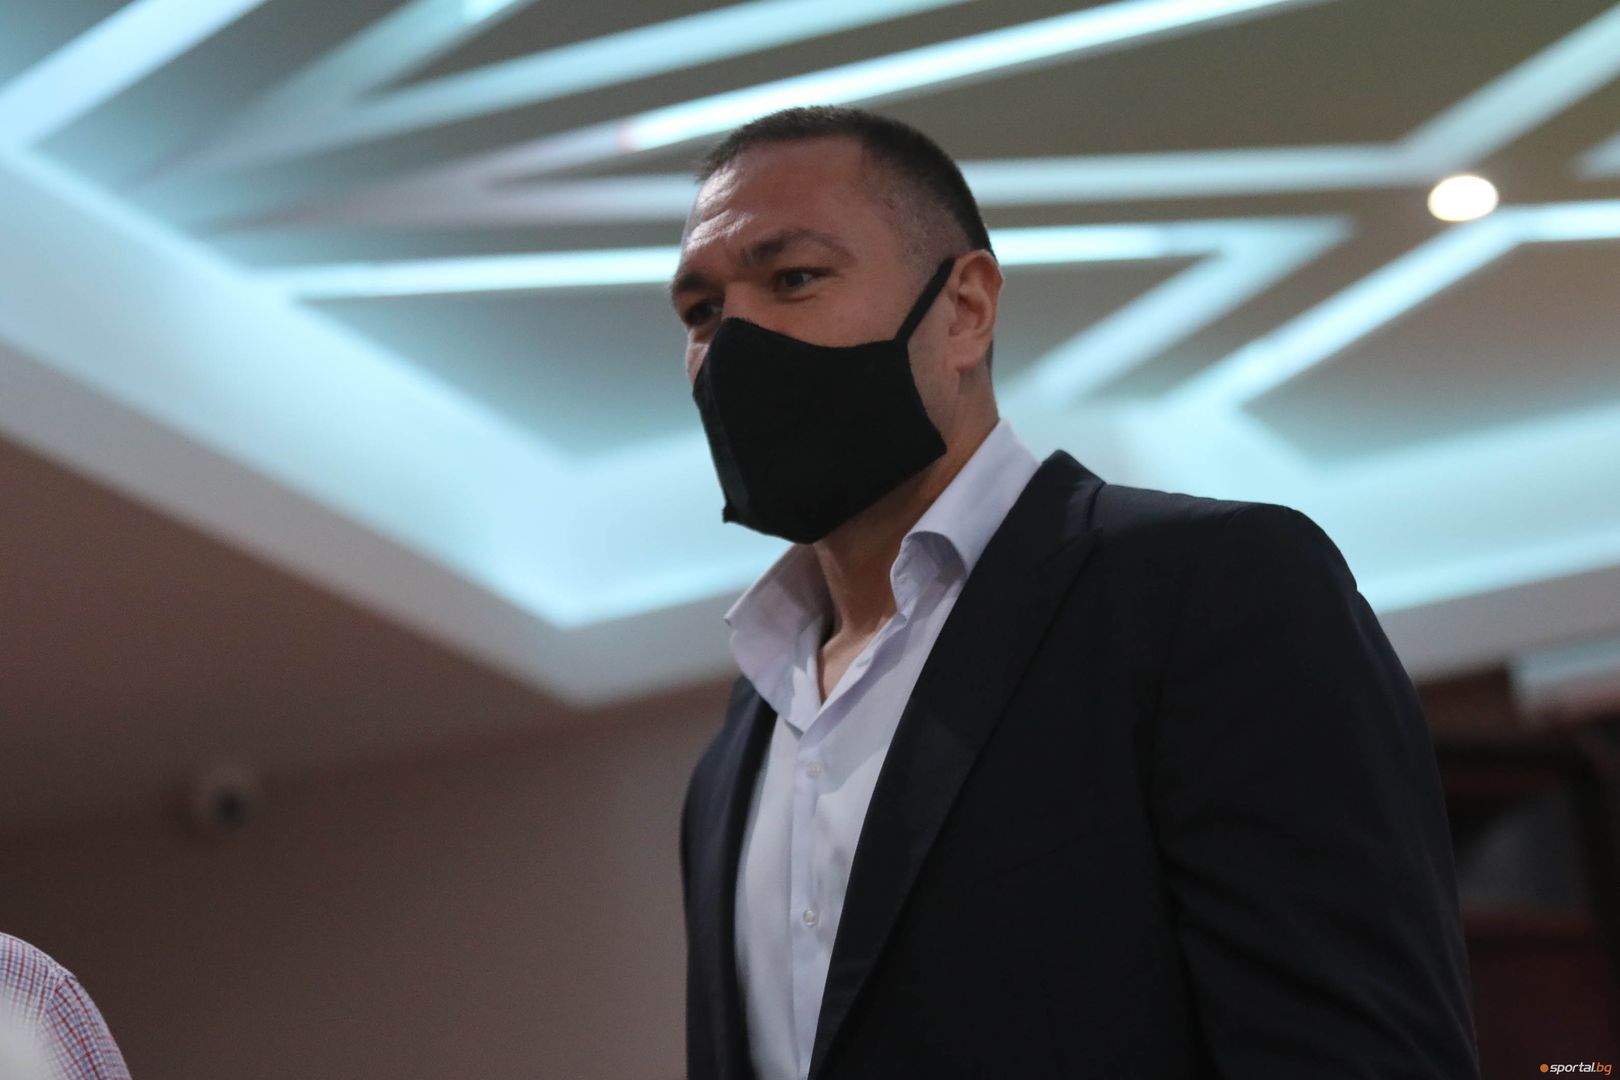 Кубрат Пулев и WINBET разкриват подробности за предстоящия сблъсък срещу Антъни Джошуа